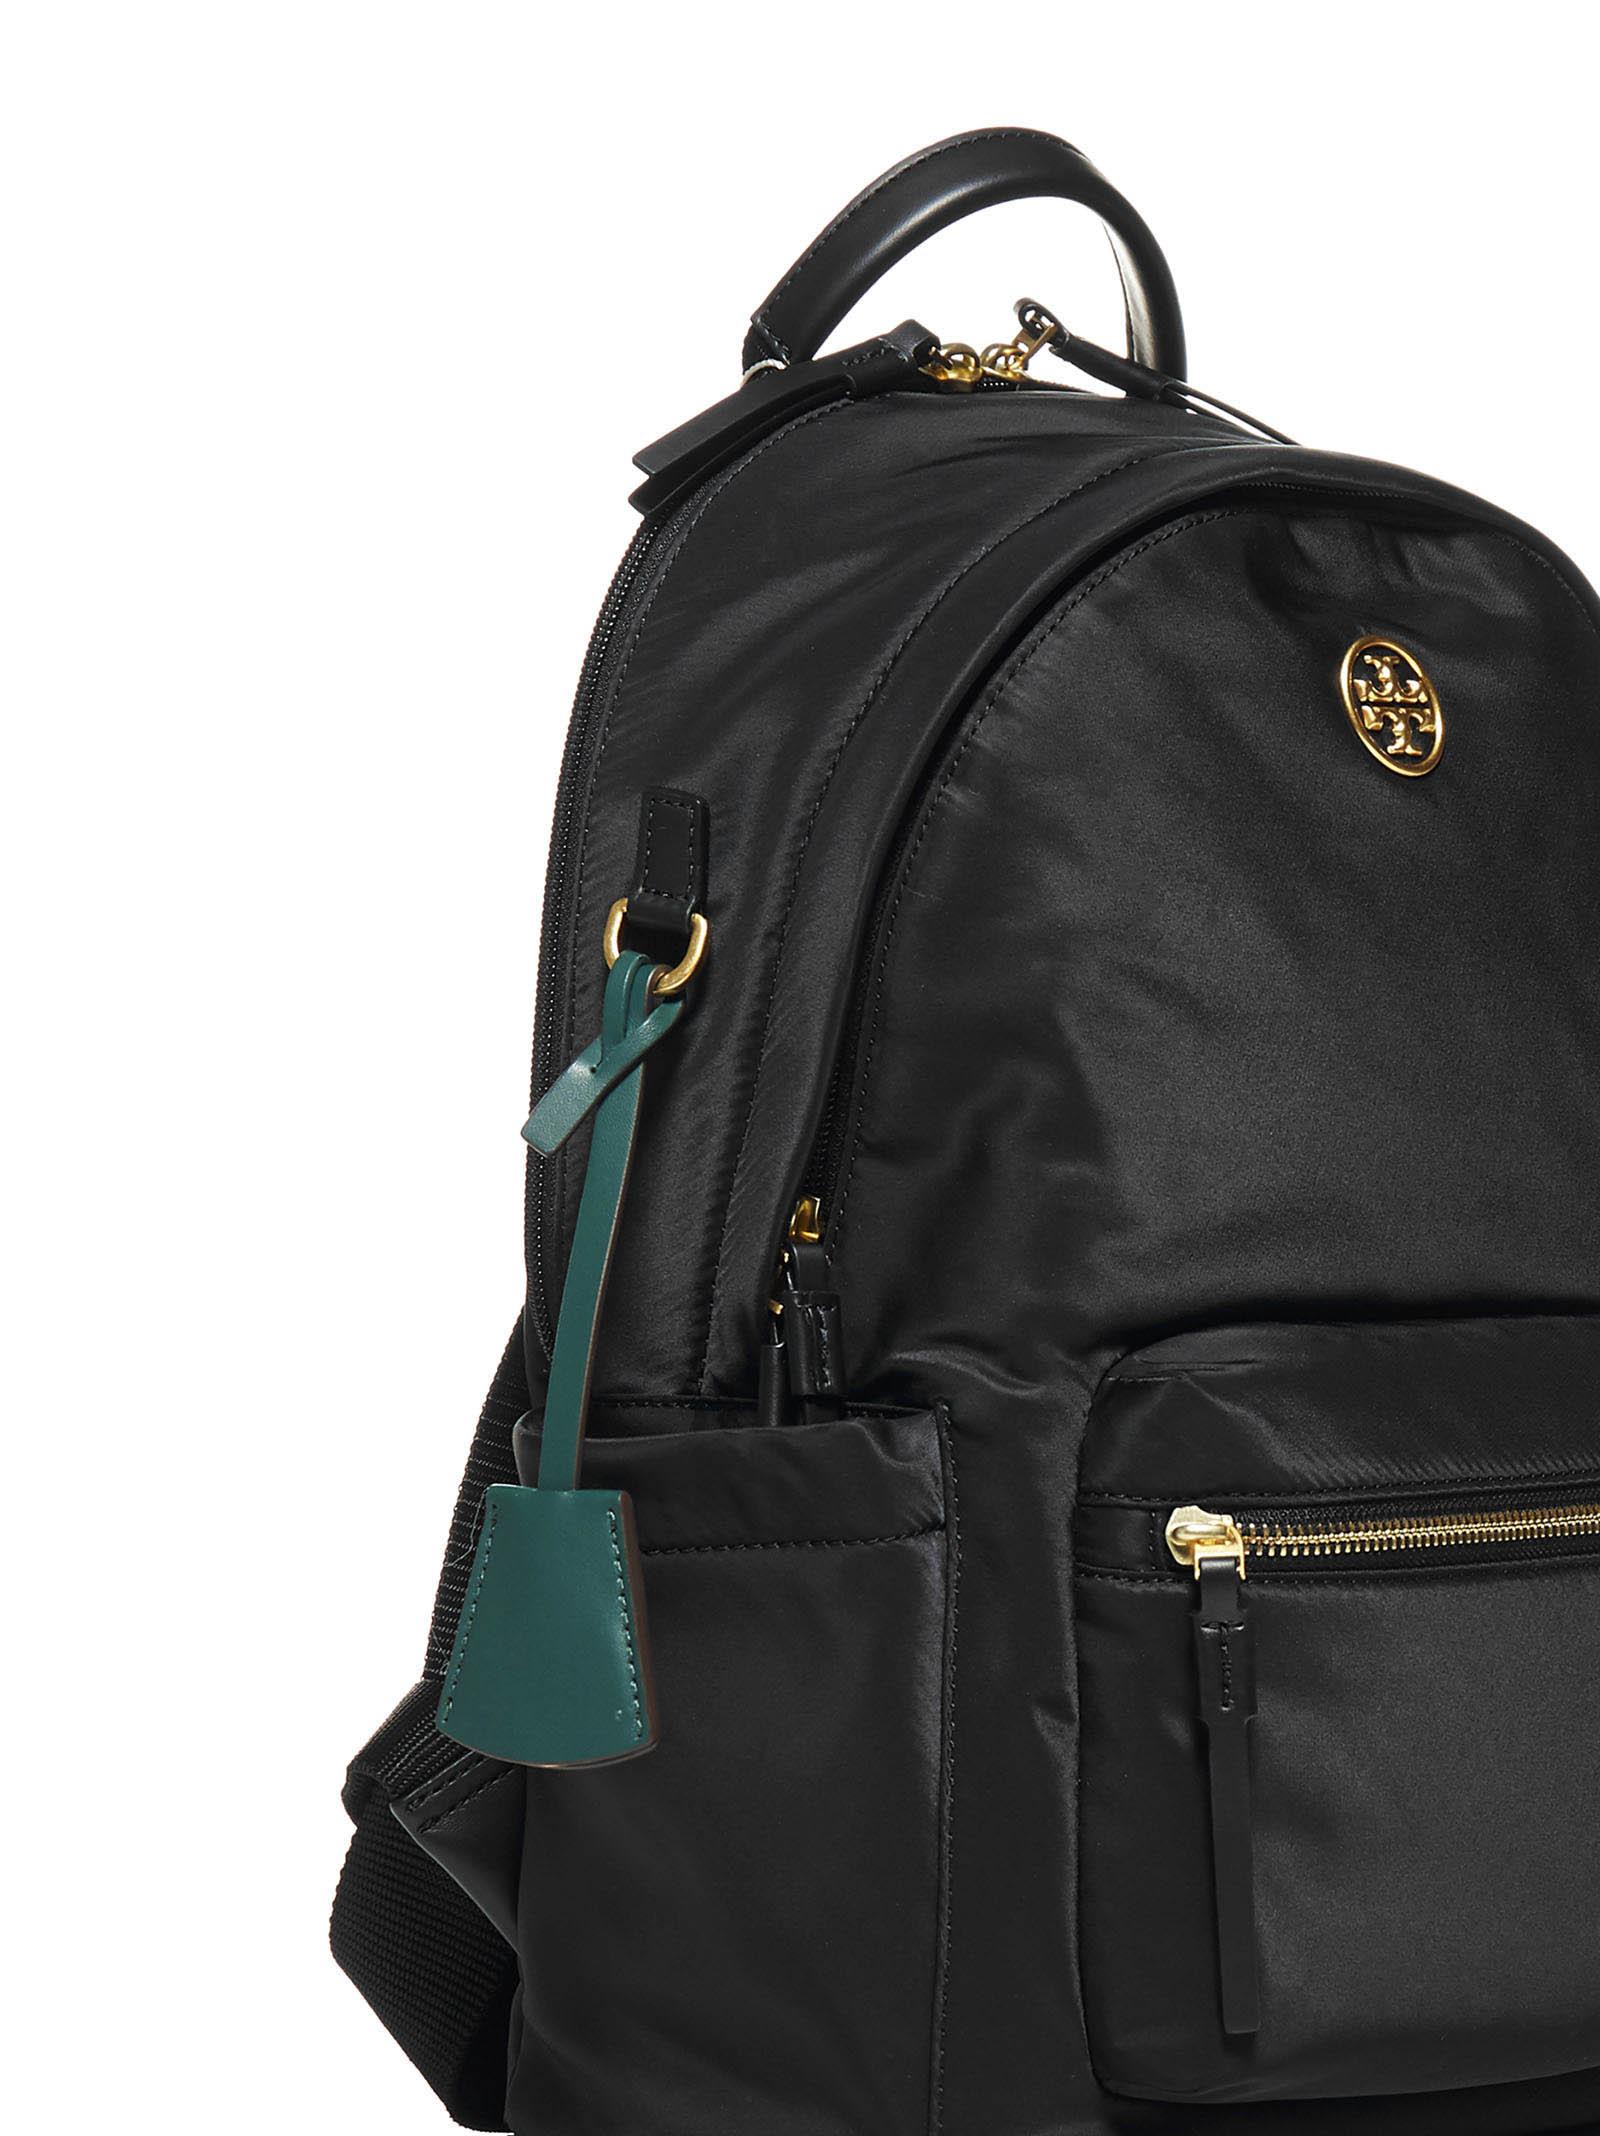 Backpacks Tory Burch - Piper backpack - 74649001